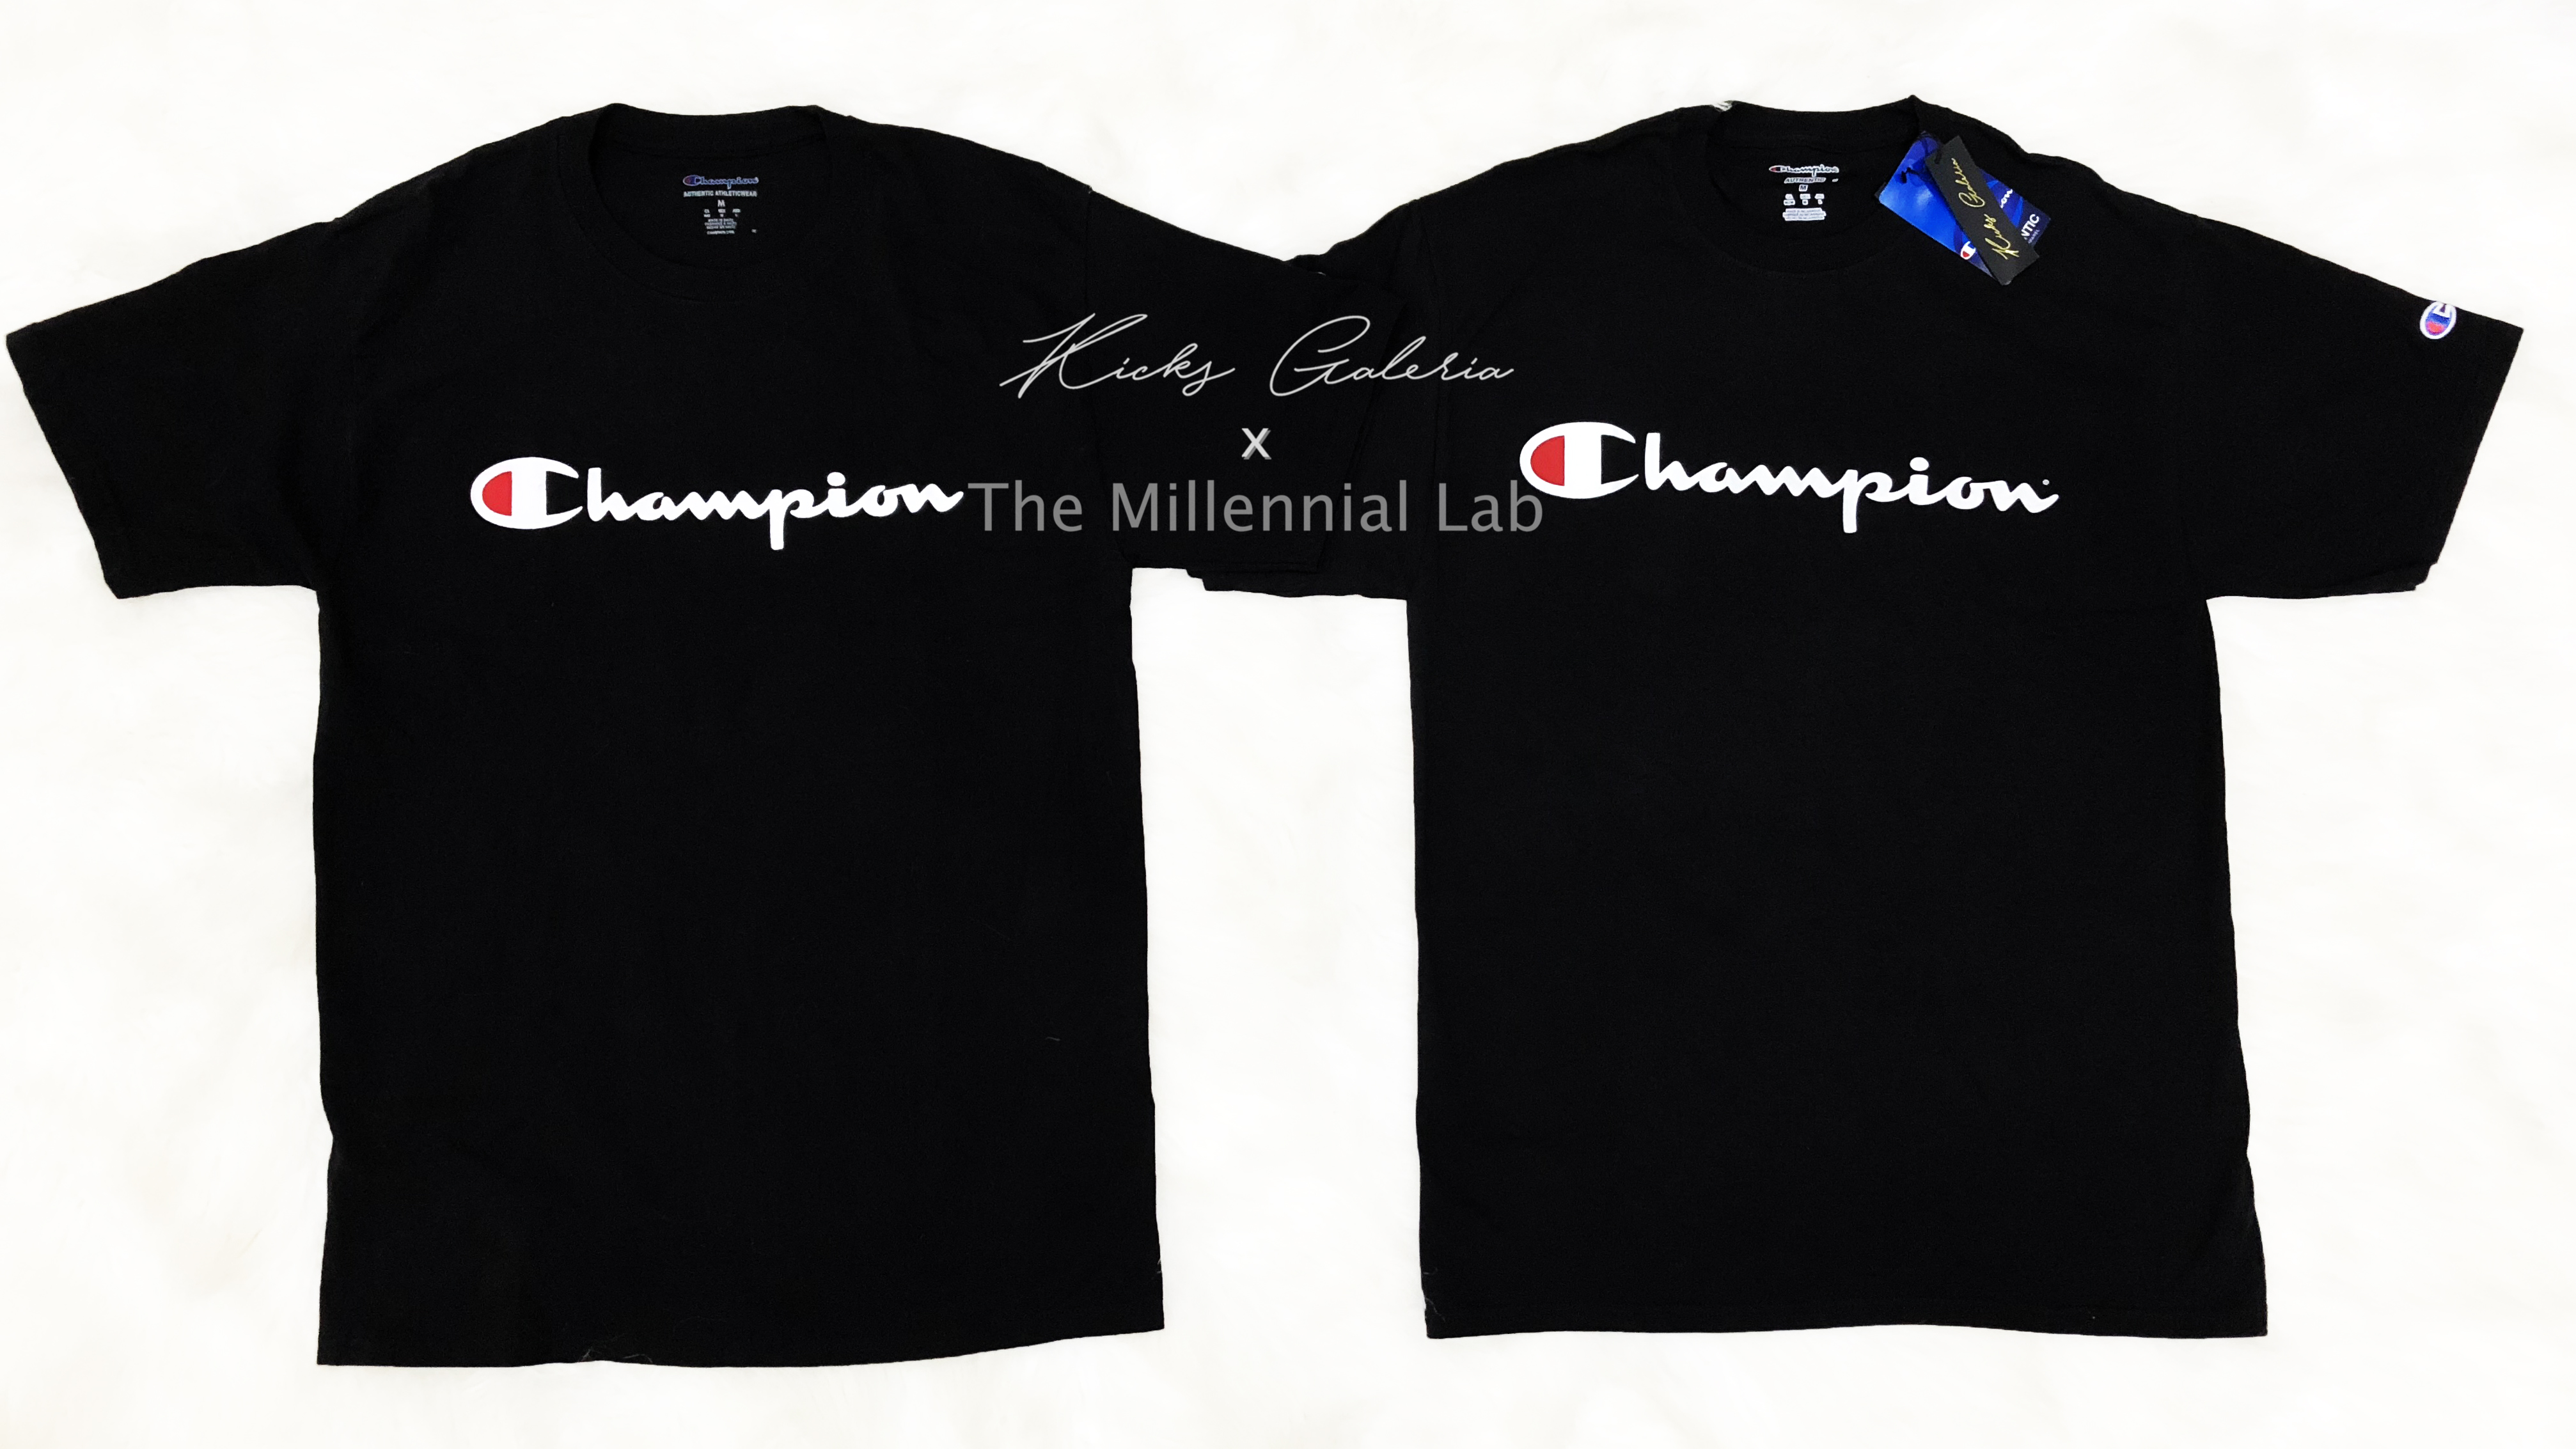 champion t shirt real vs fake